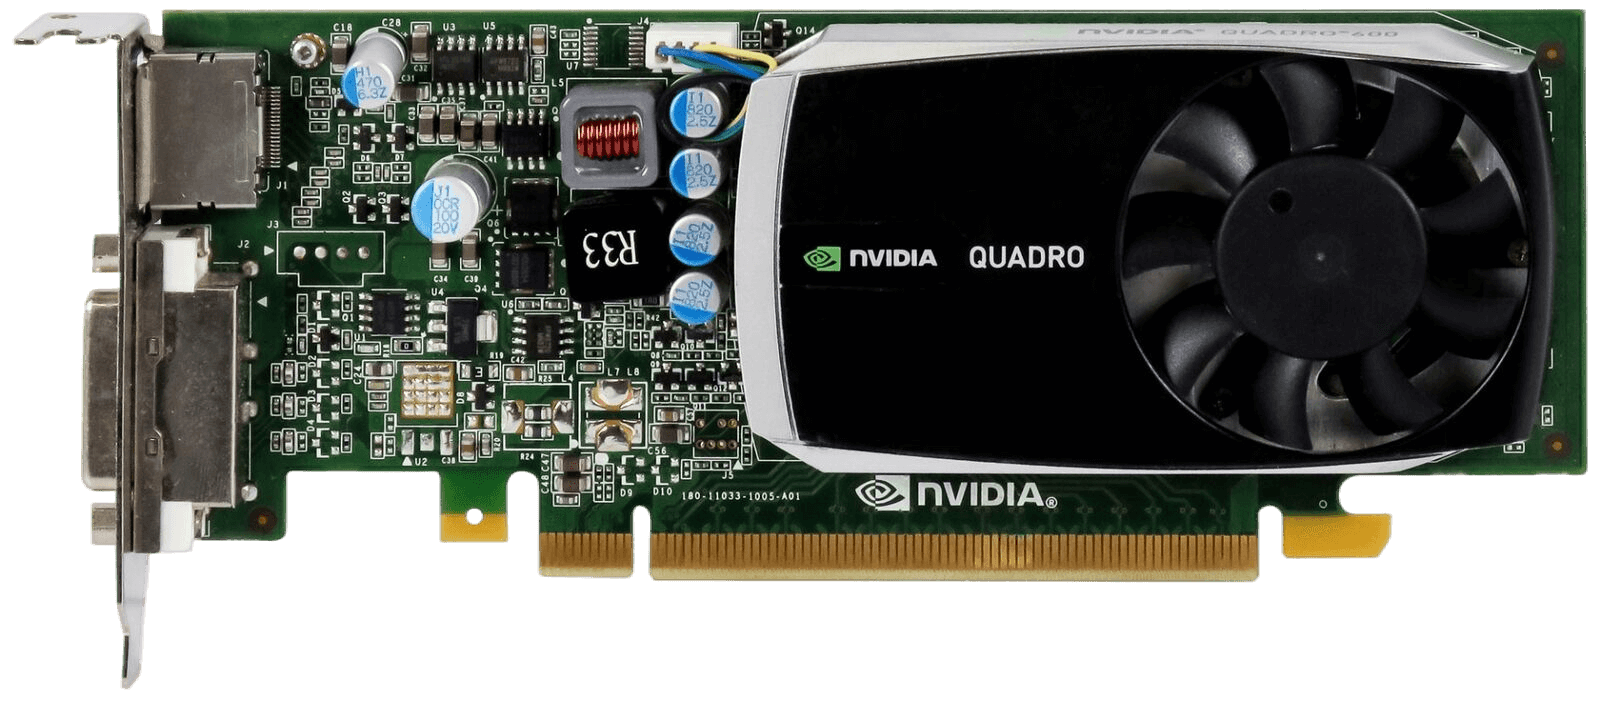 IBM Lenovo NVIDIA Quadro 600 1GB 128-Bit DDR3 PCI-E Video Graphics Card 03T8009 / Low Profile Bracket